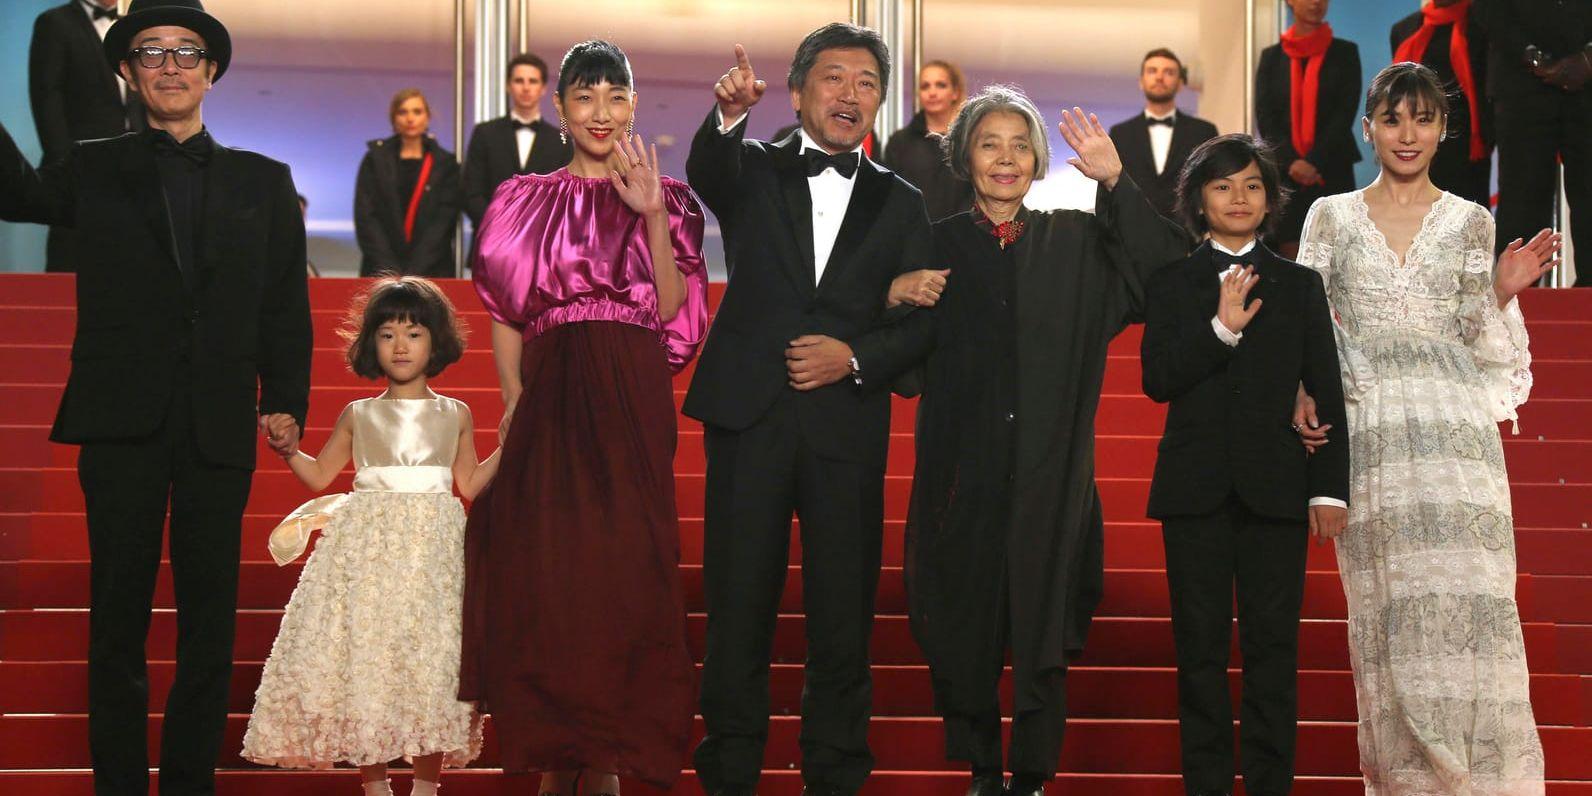 Skådespelarna Lily Franky, Miyu Sasaki, Sakura Ando, regissören Hirokazu Koreeda, skådespelarna Kirin Kiki, Jyo Kairi, och Mayu Matsuoka vid premiären av "Shoplifters" i Cannes. Arkivbild.